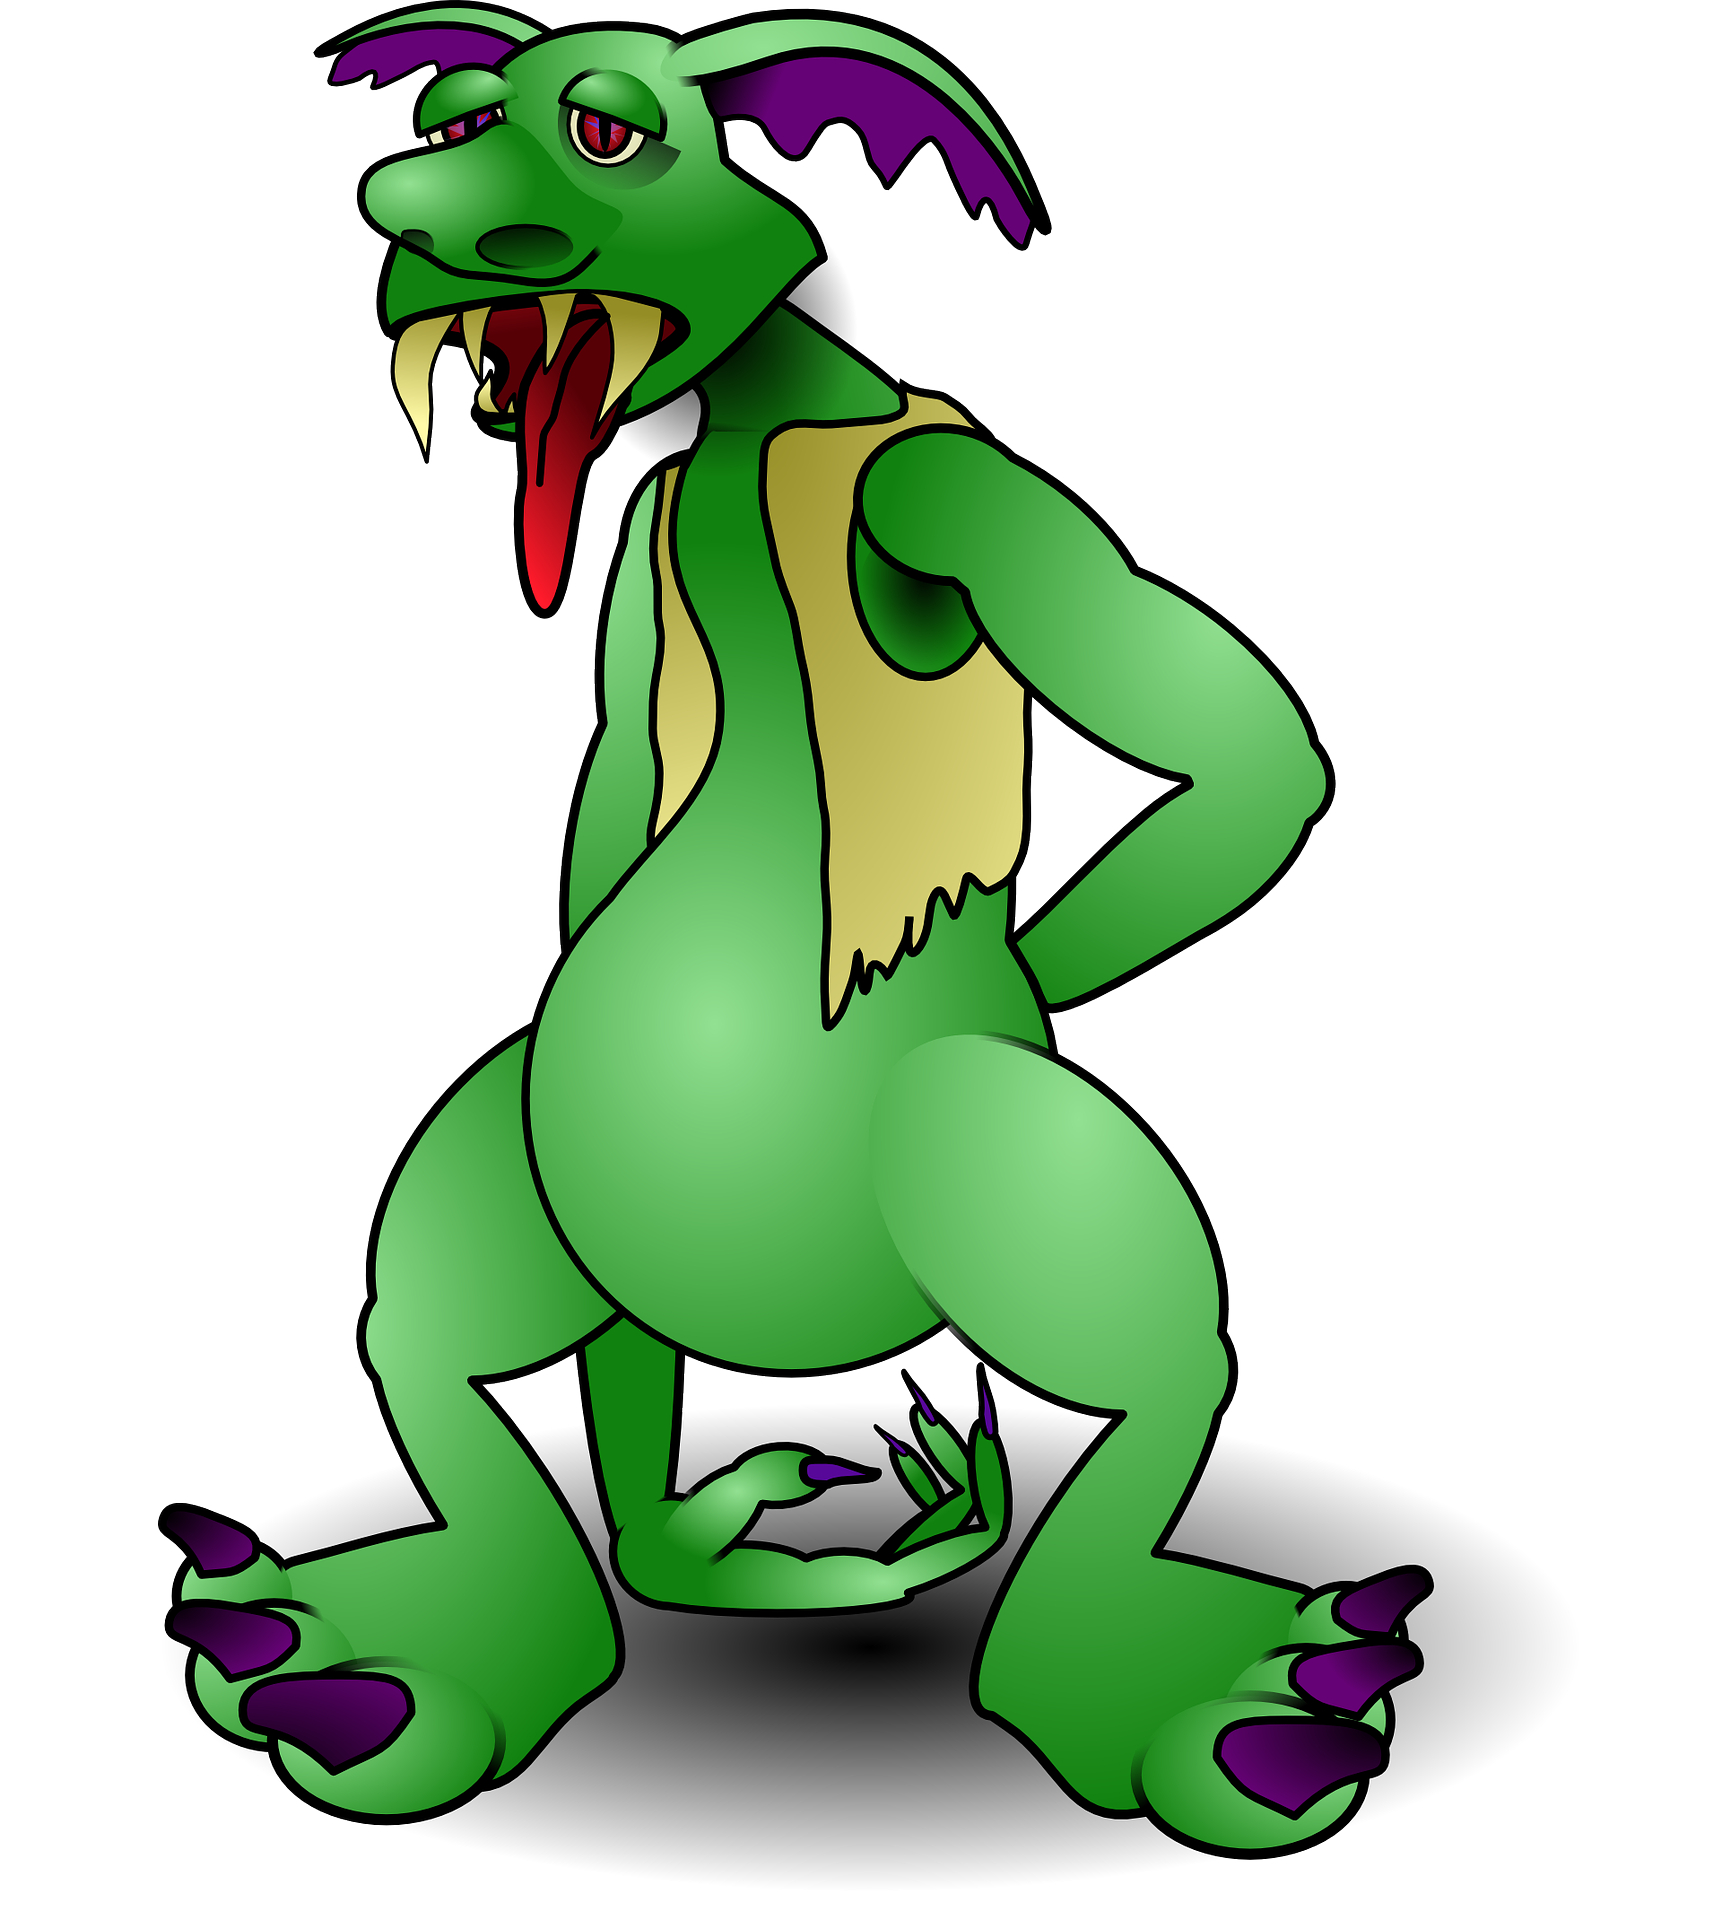 Cartoon animal,green troll,monster vector